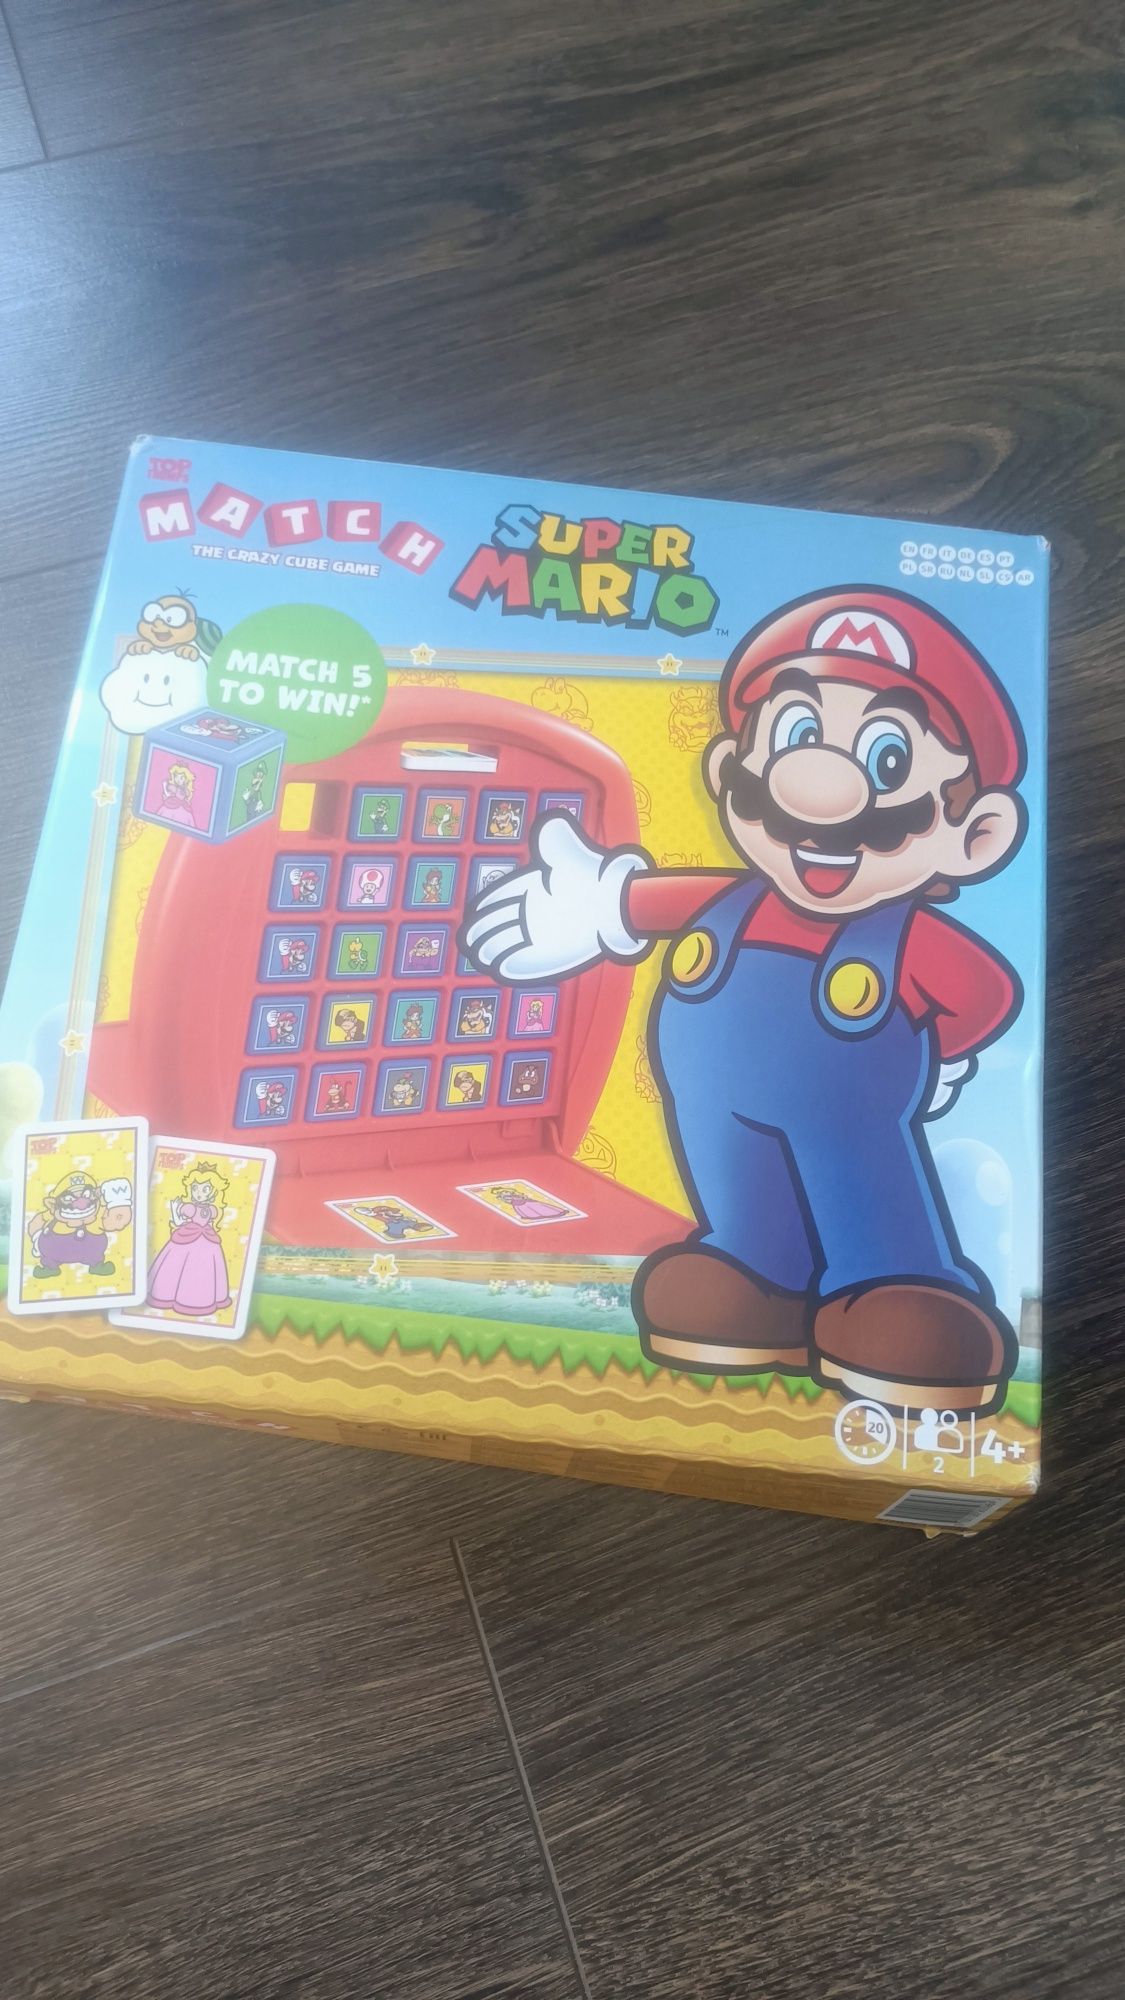 Super Mario match